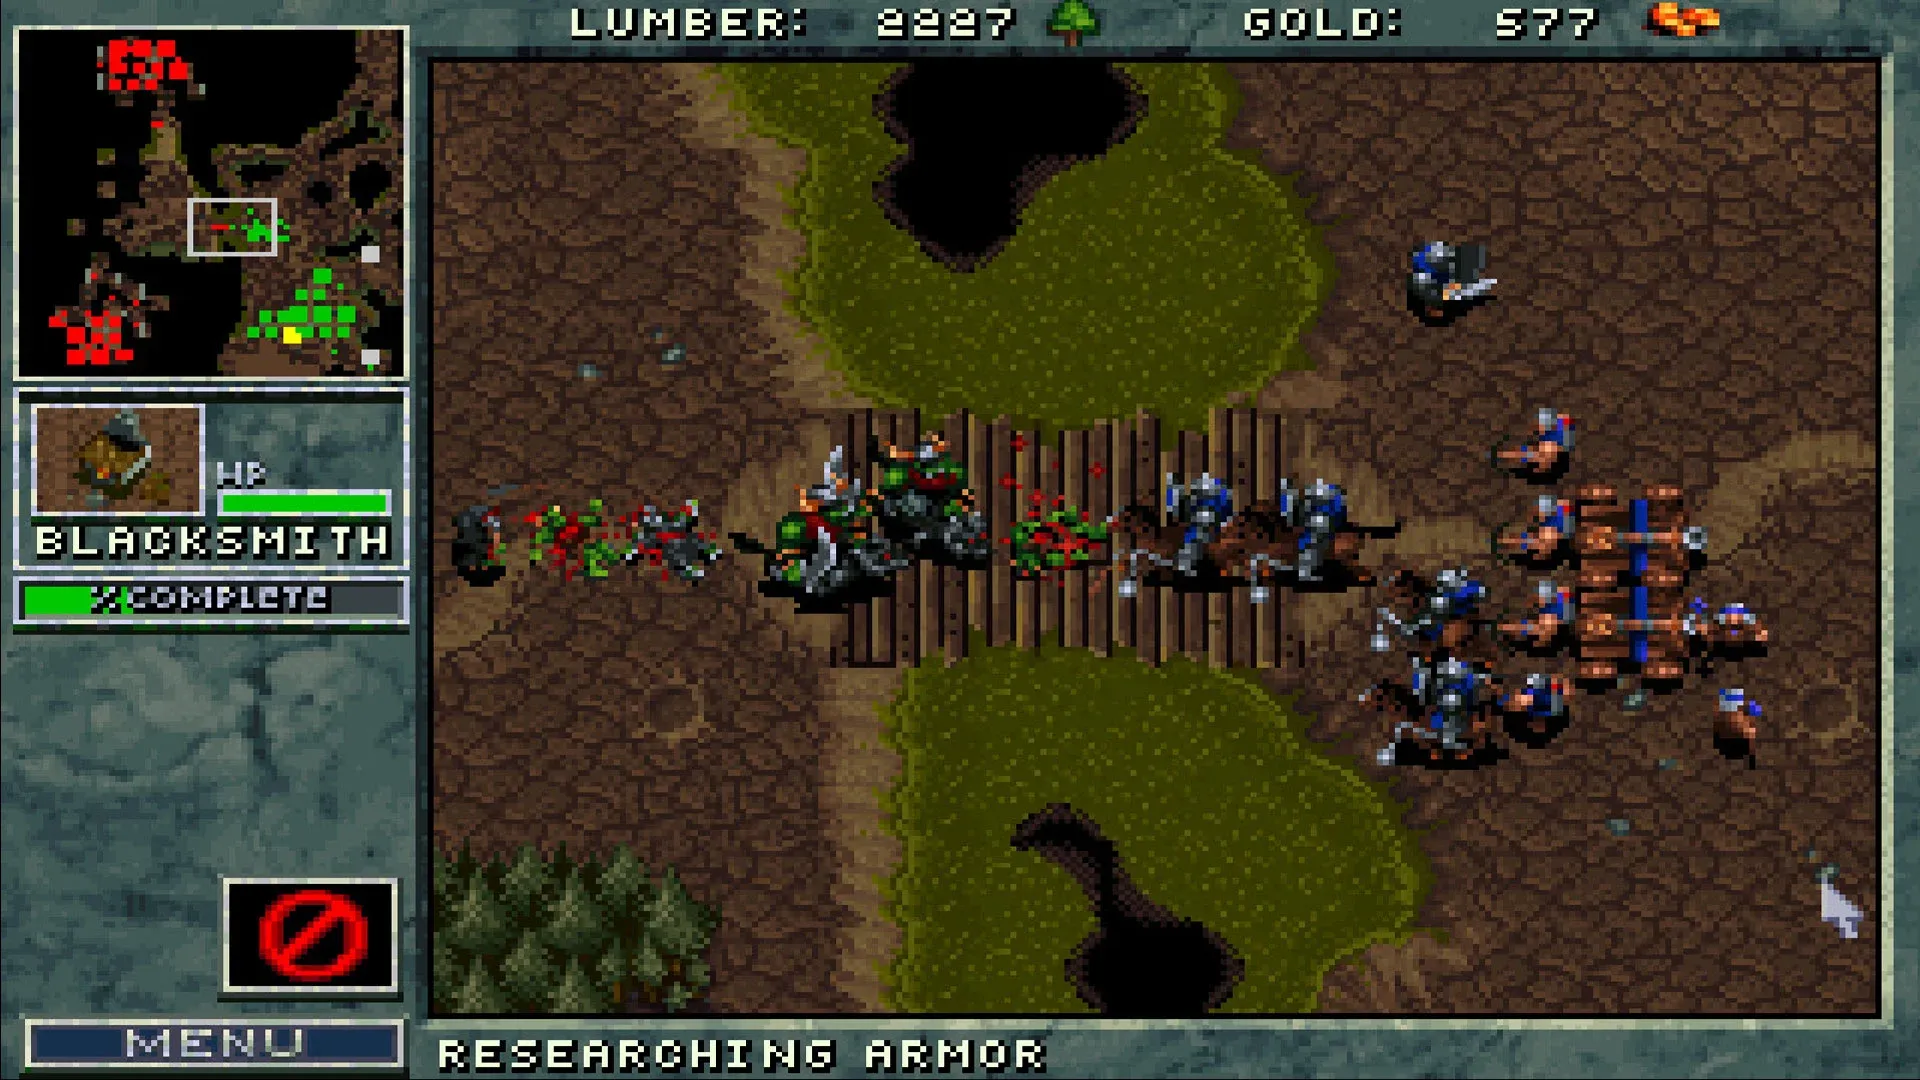 Imagem do jogo Warcraft: Orcs & Humans, com exércitos de Orcs e Humanos compostos por diversas unidades se enfrentando sobre uma ponte